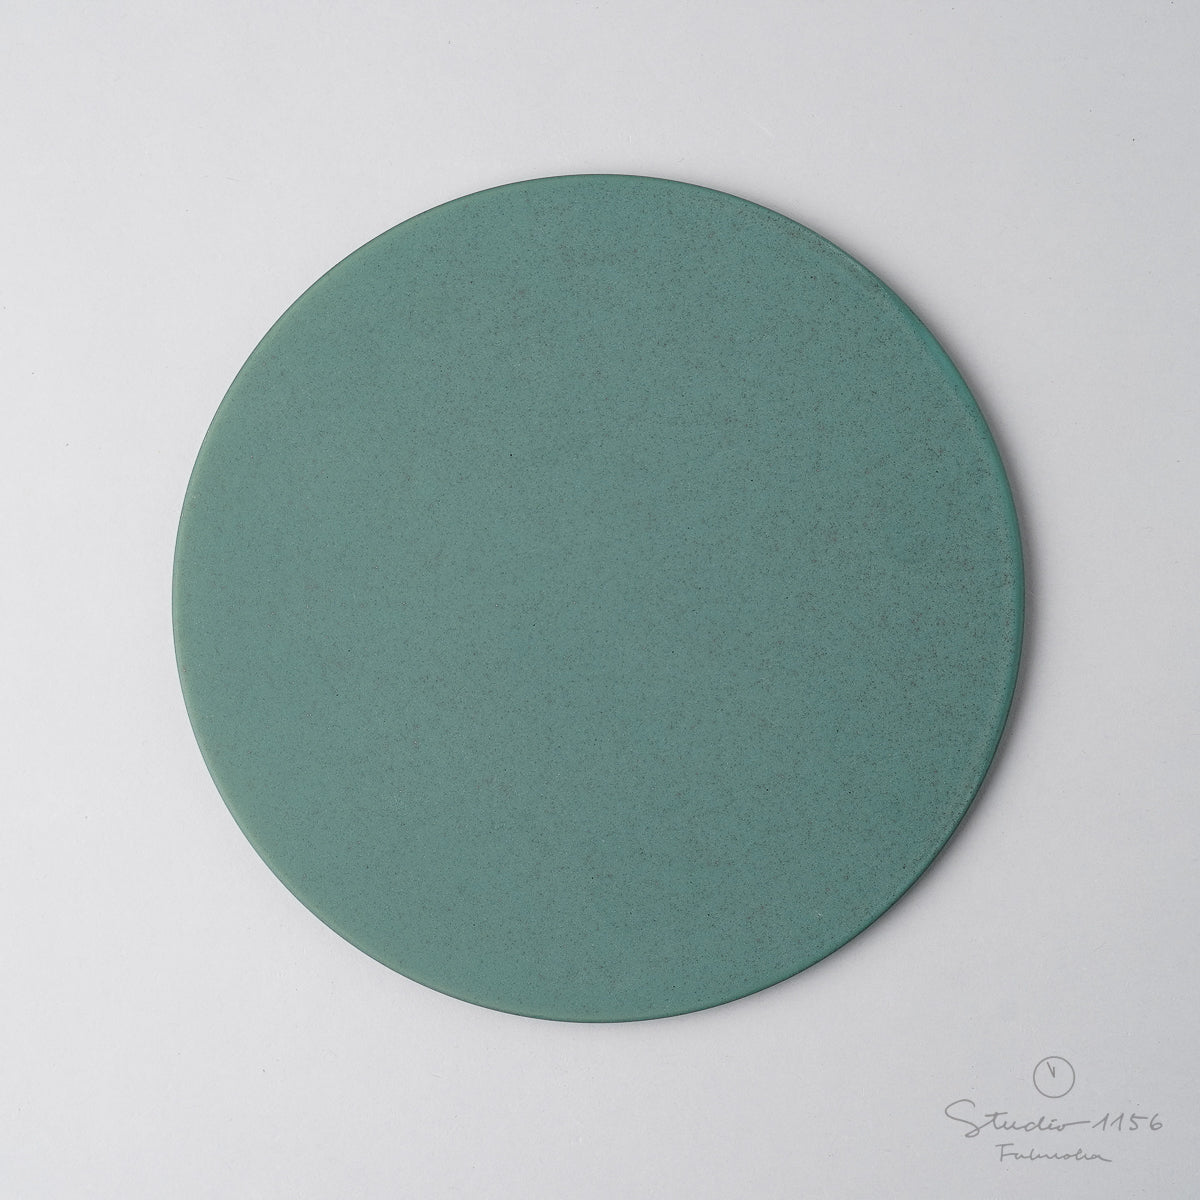 伊万里焼 極フラットプレート(M) 19.5cm 緑斑紋 Hataman Studio1156